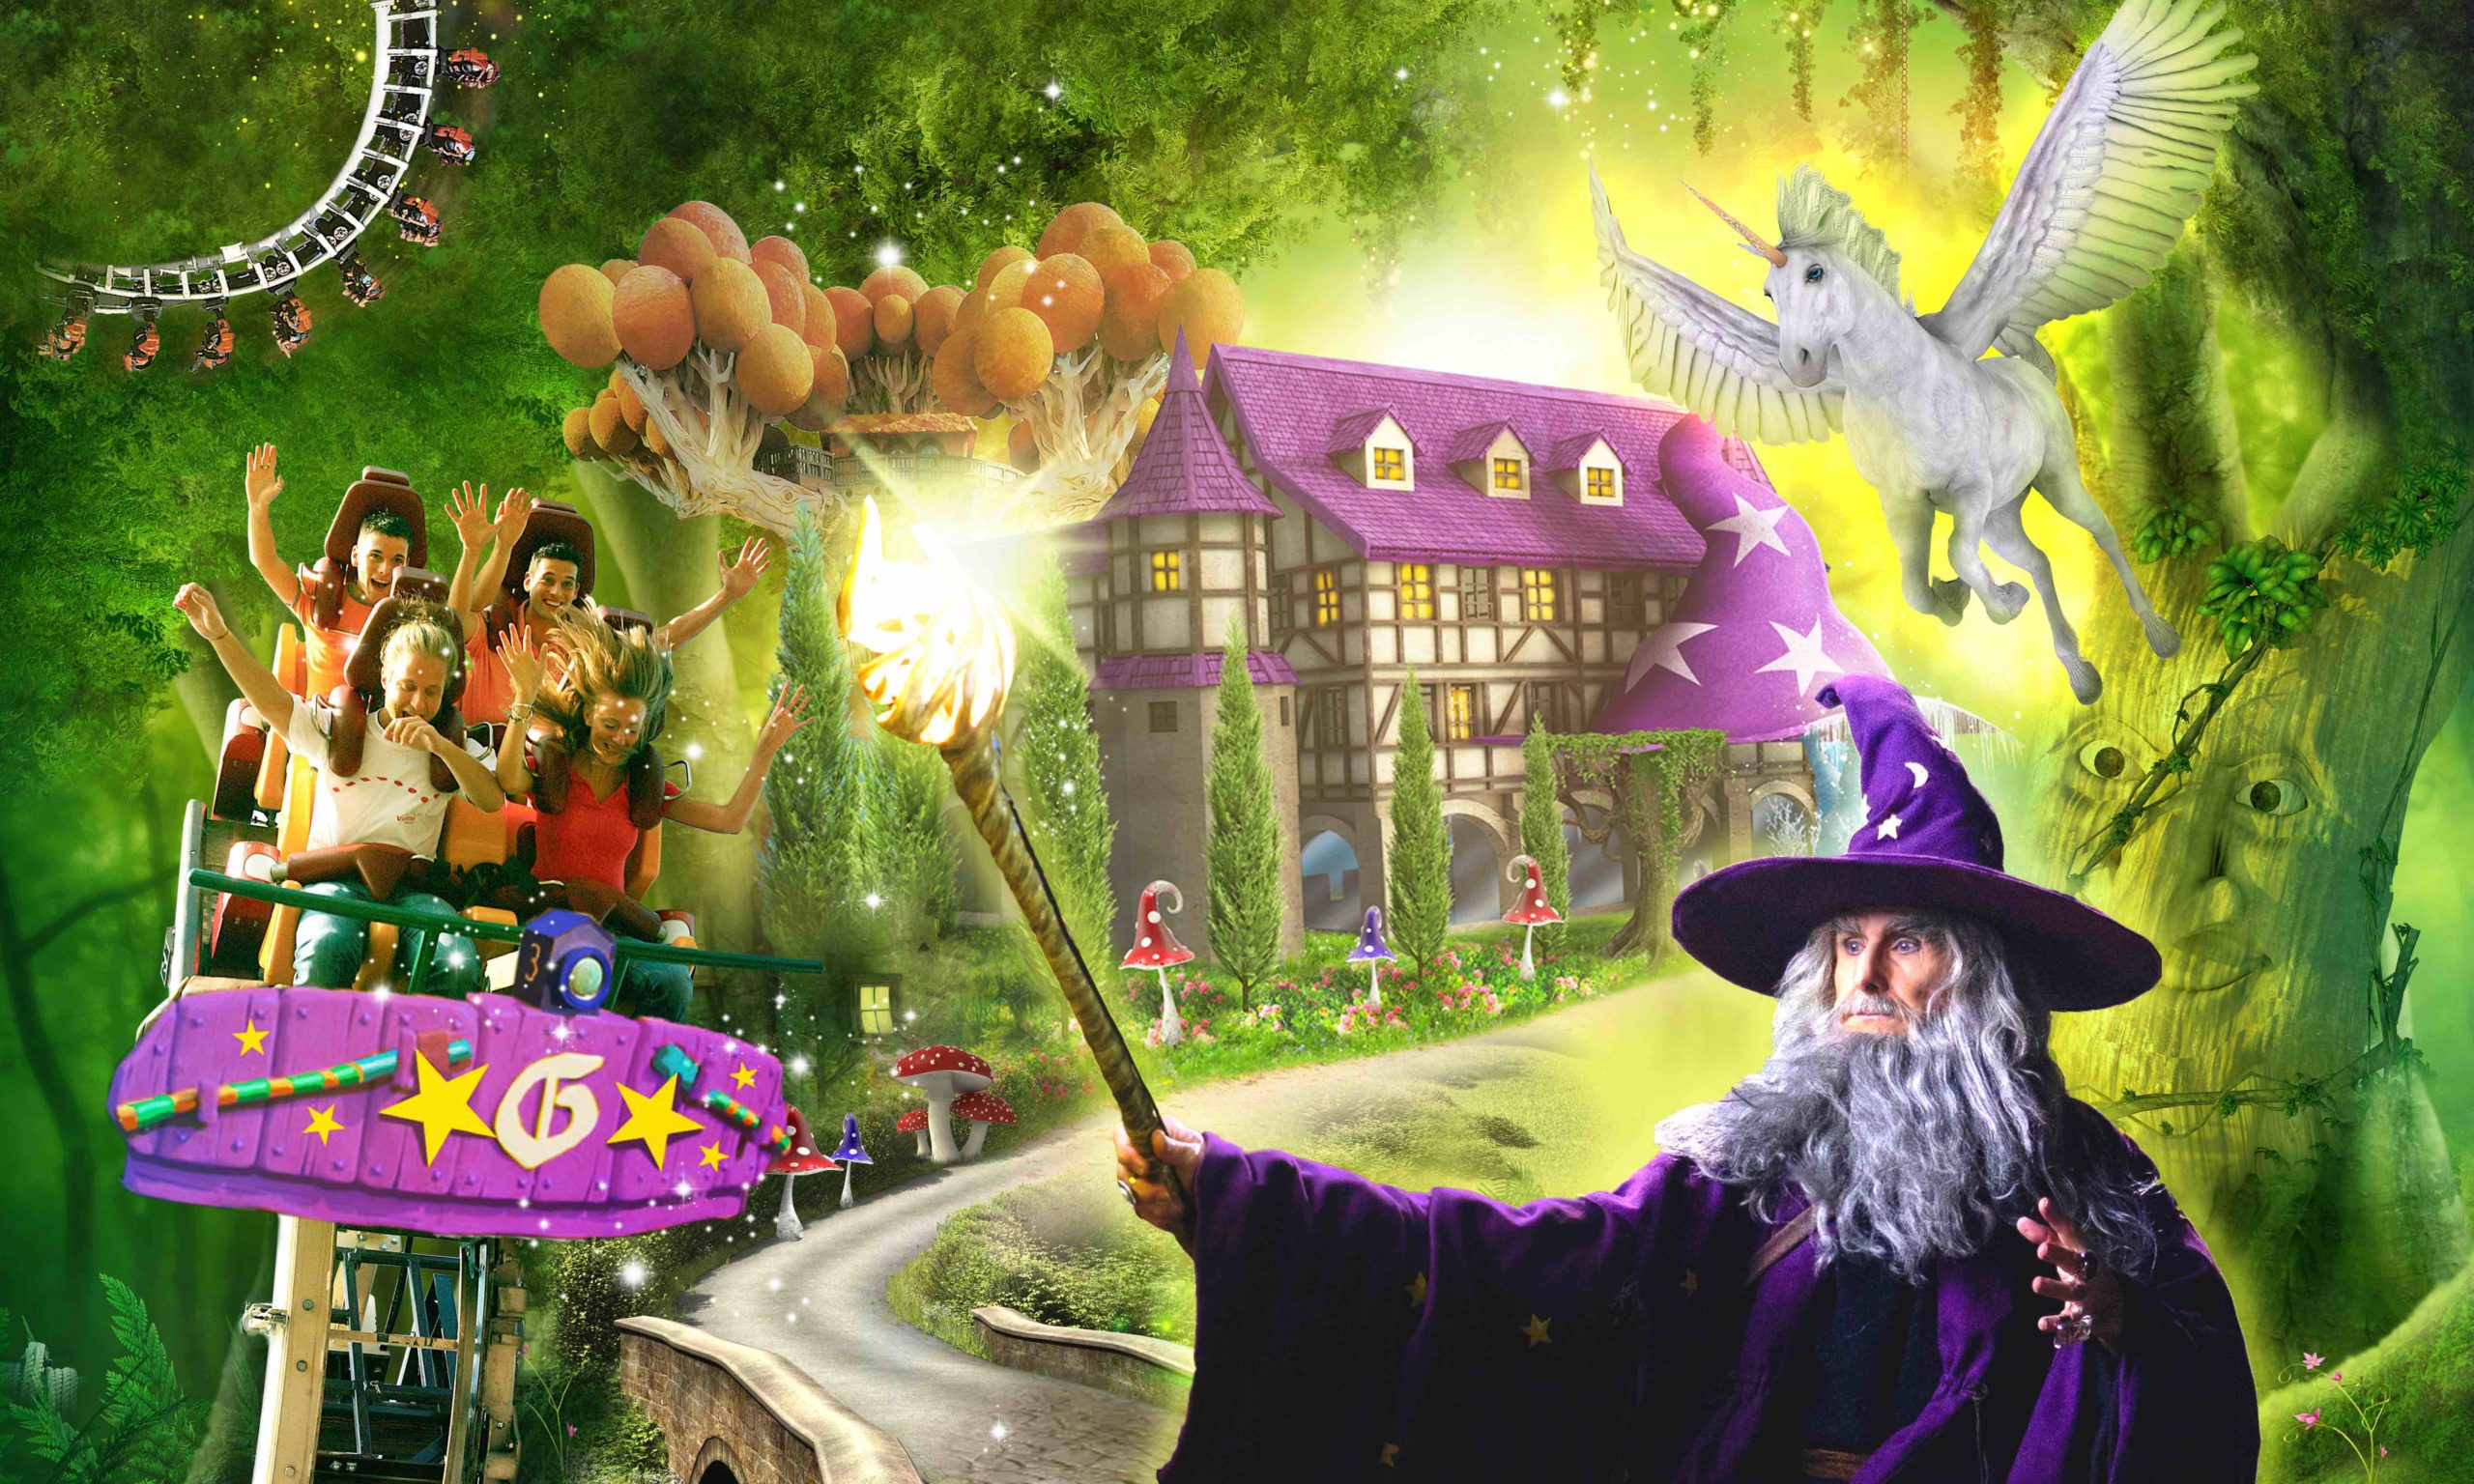 Year of Magic per Gardaland Resort 2019: una stagione davvero magica